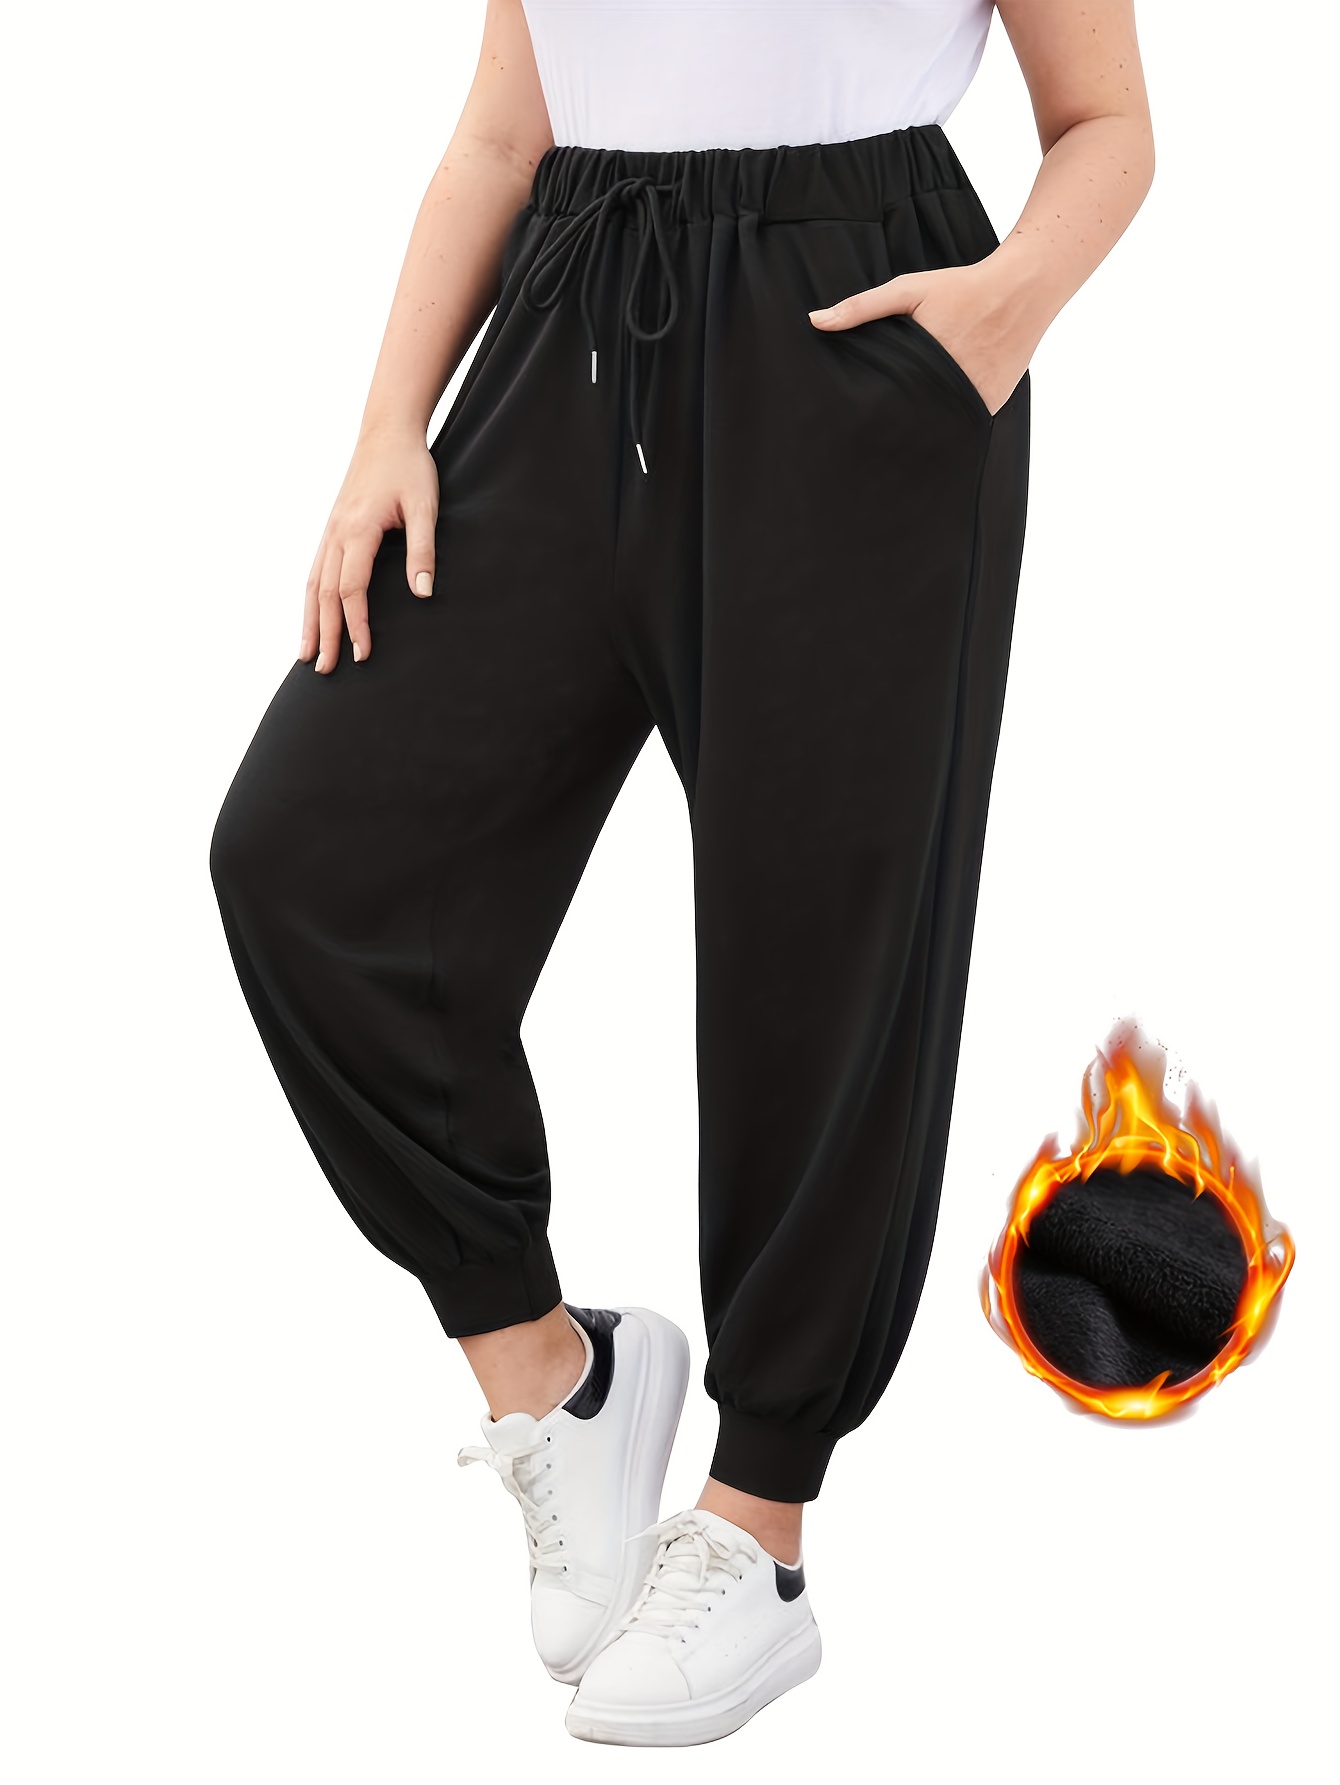 Solid Black Plus Size Sweatpants (Women's) 